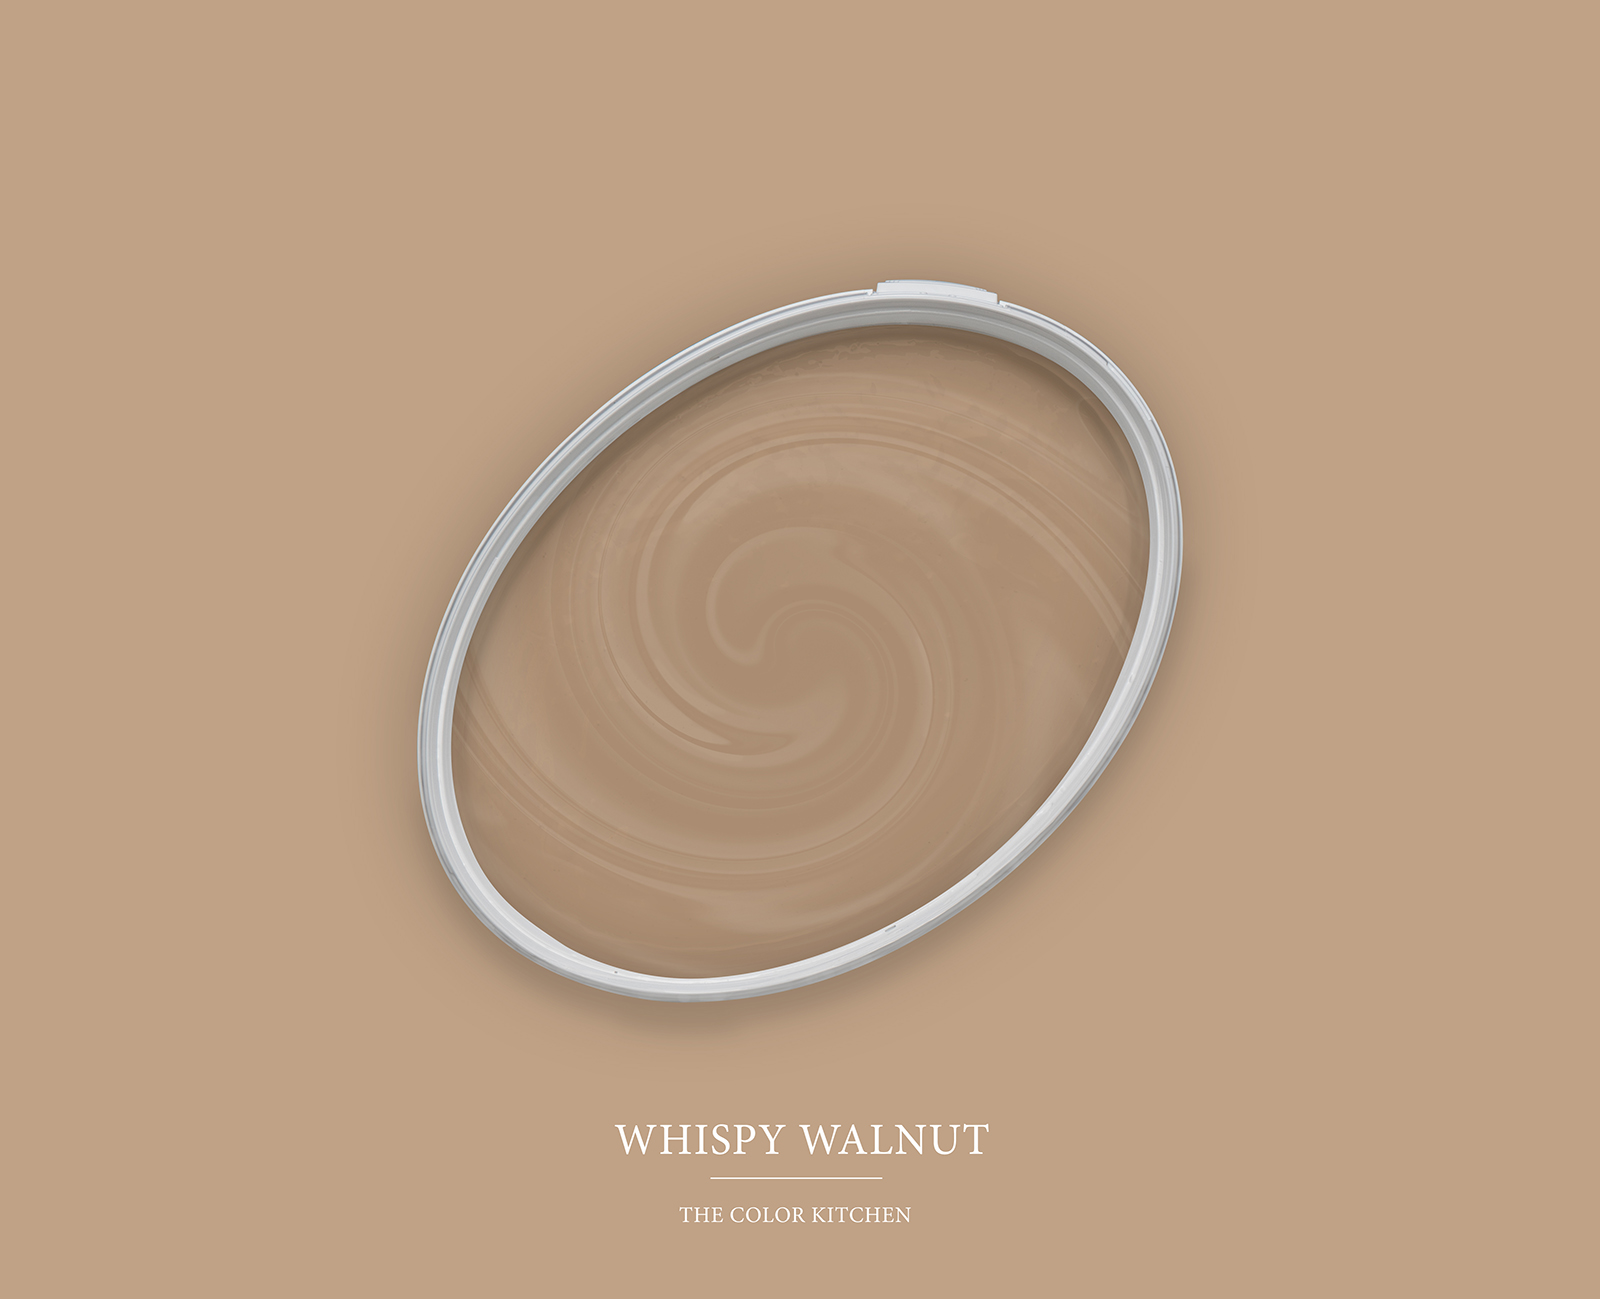         Wall Paint TCK6011 »Whispy Walnut« in intensive beige – 2.5 litre
    